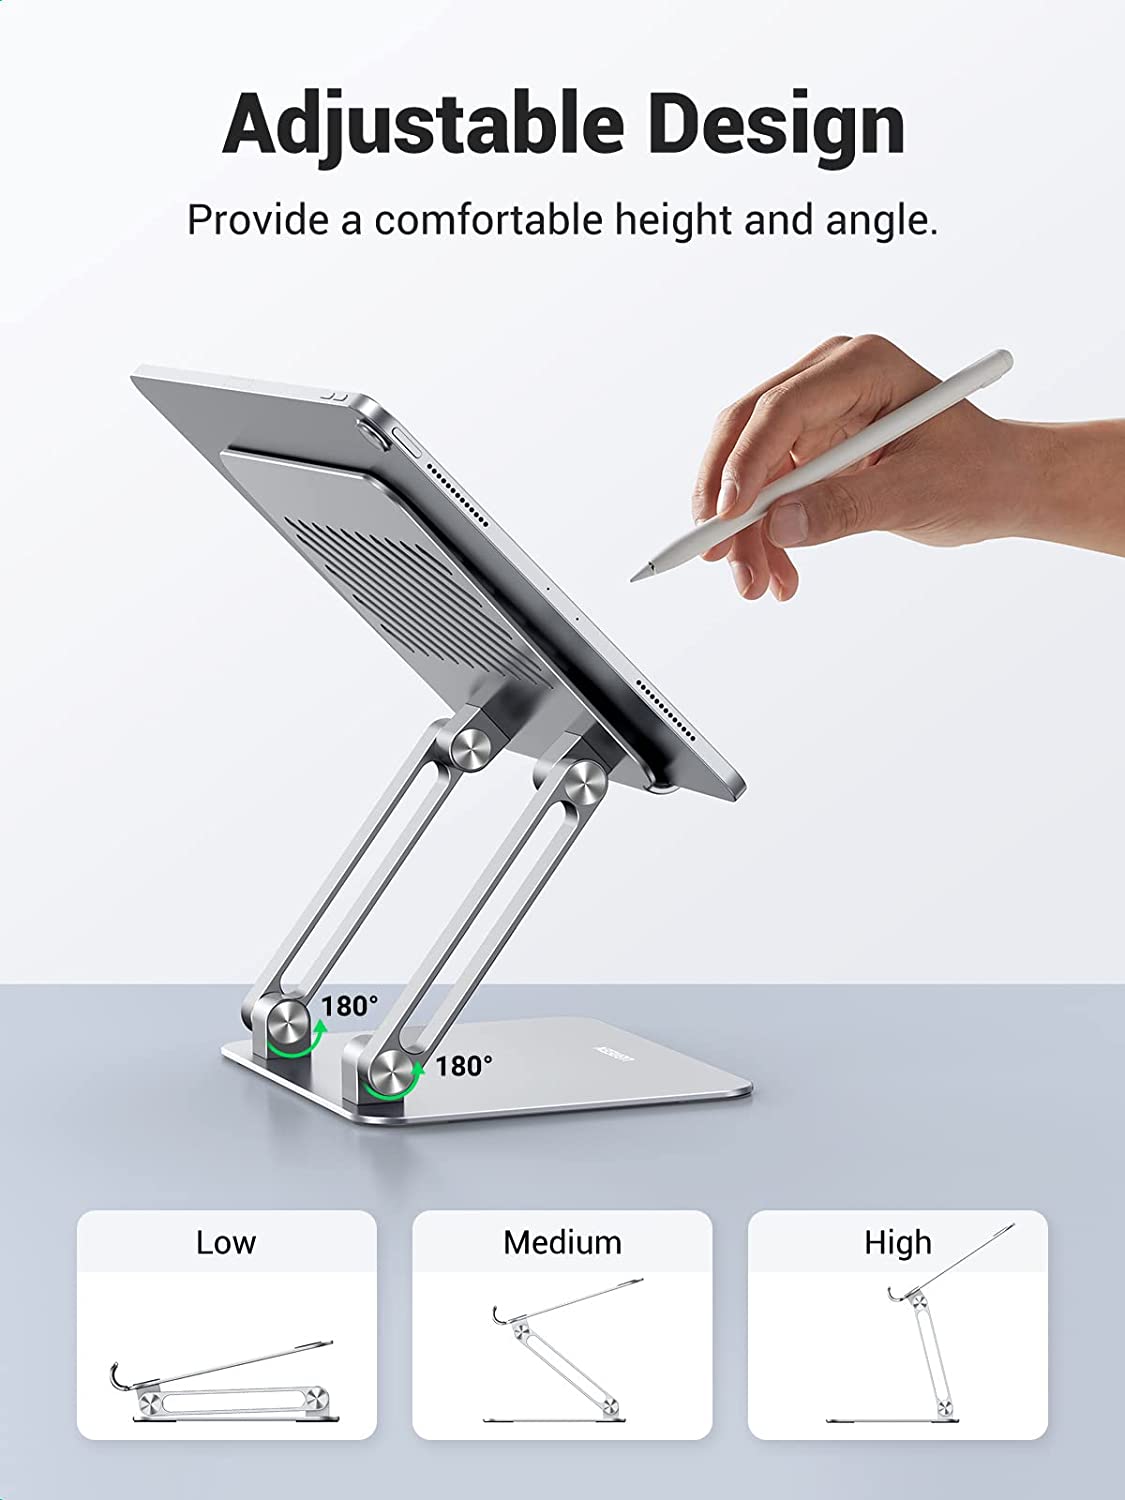 Soporte Para iPad Tablet Celular 4 - 12 Escritorio / Ugreen